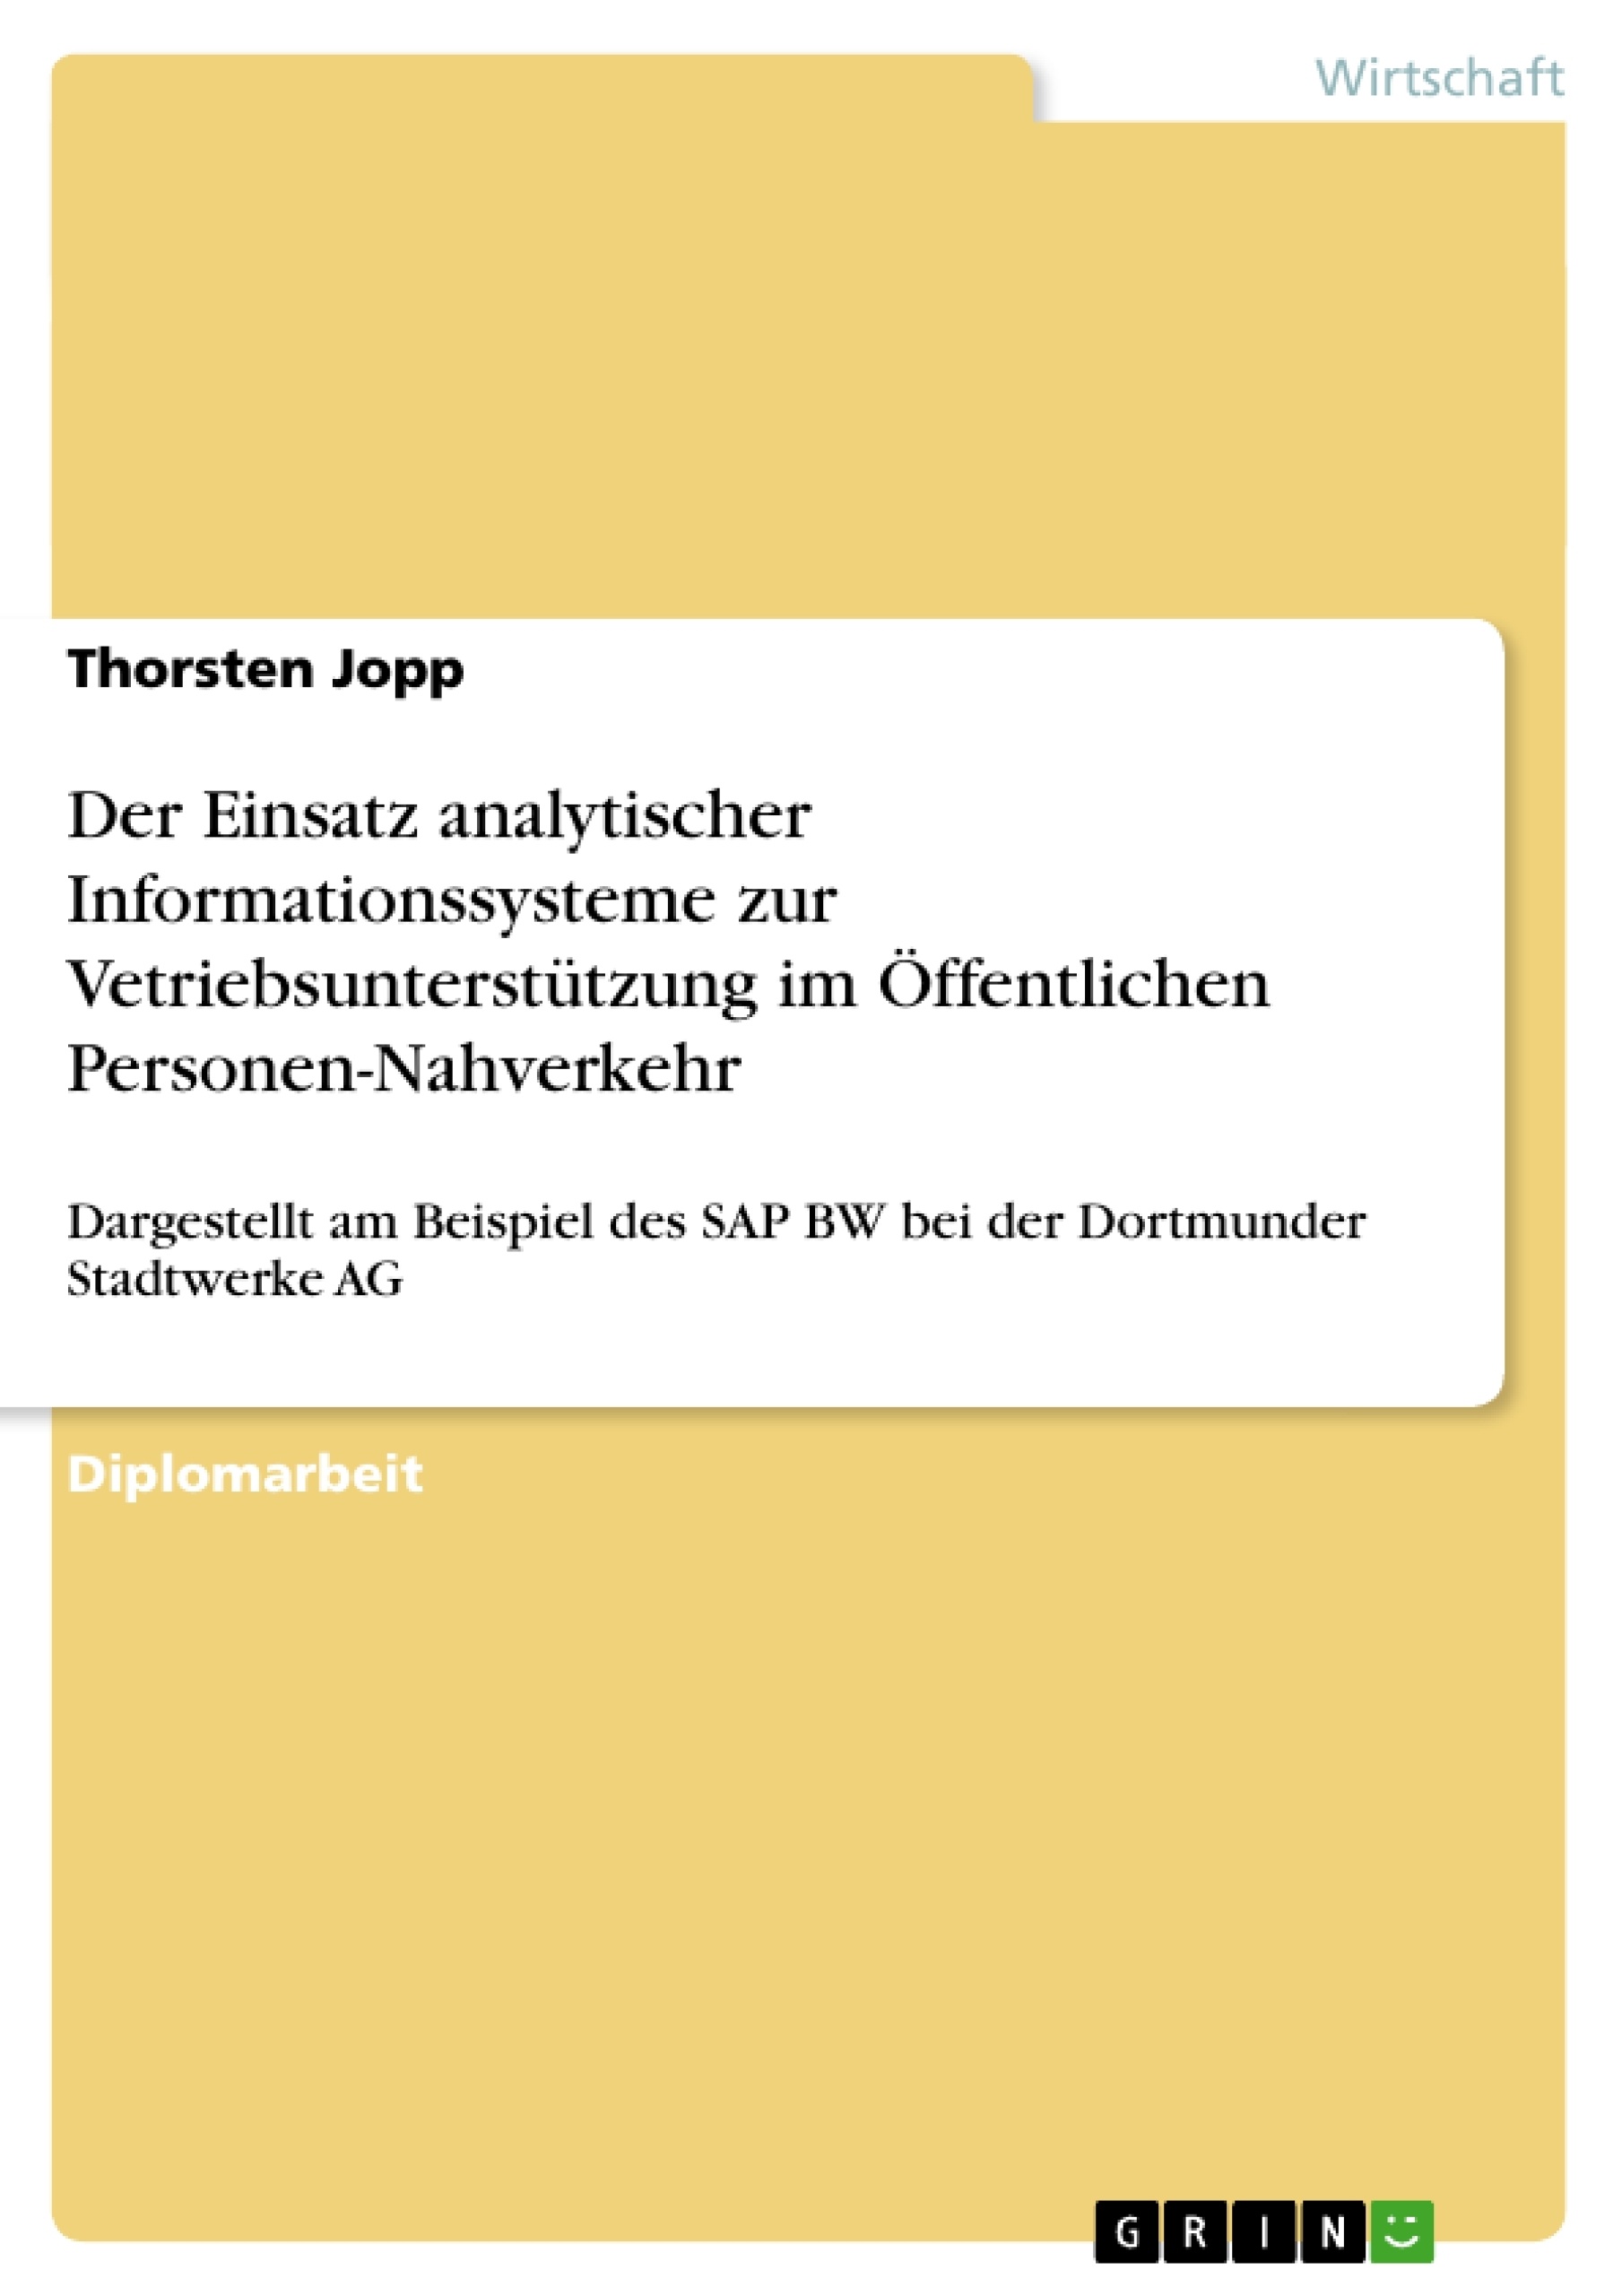 Title: Der Einsatz analytischer Informationssysteme zur Vetriebsunterstützung im Öffentlichen Personen-Nahverkehr